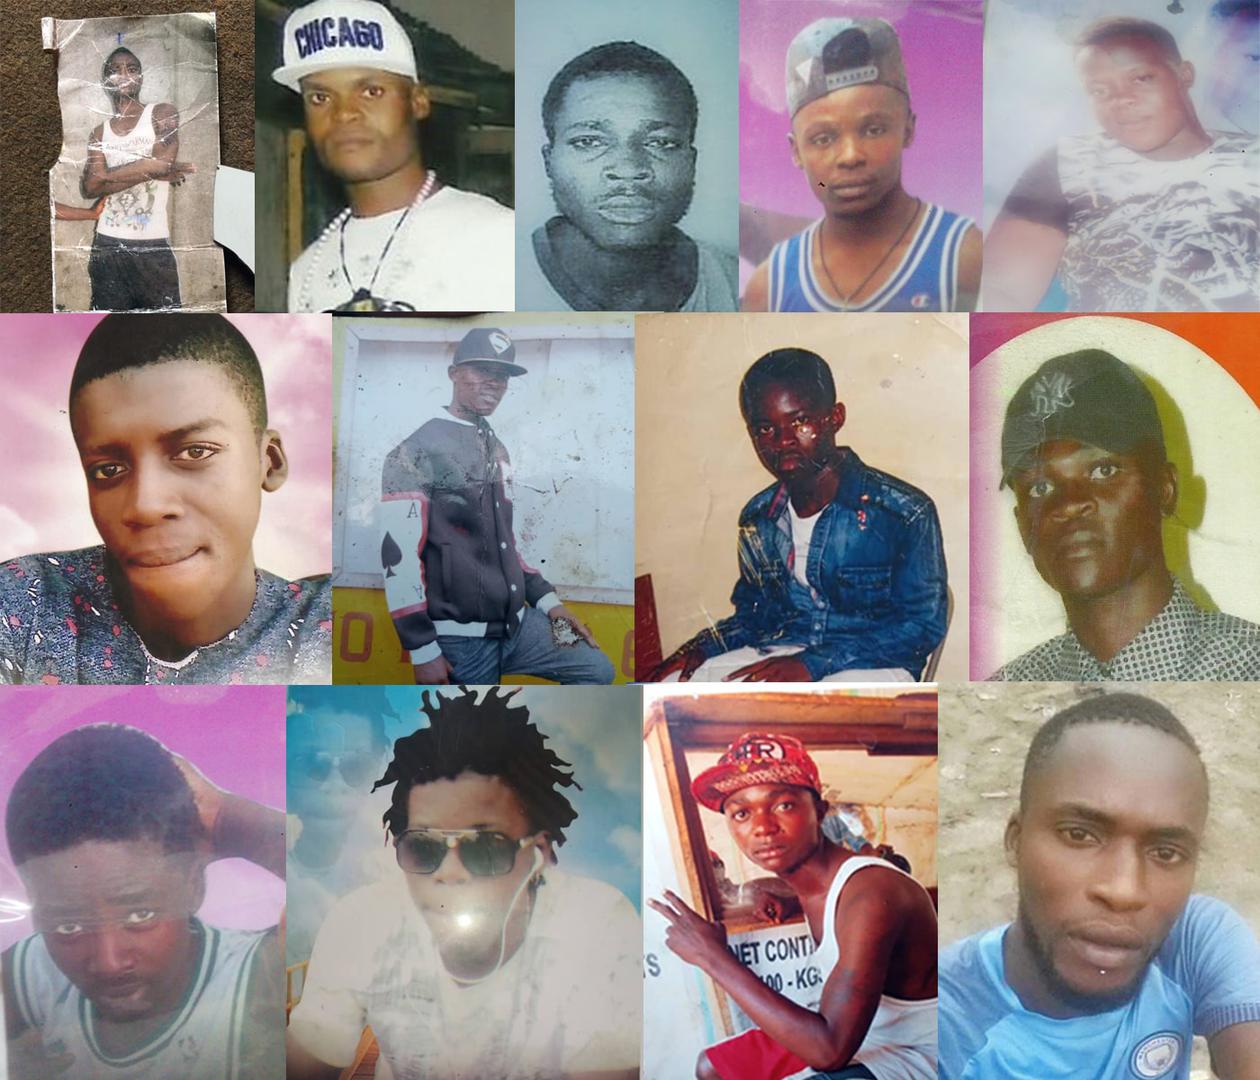 Les forces de sécurité en République démocratique du Congo ont exécuté sommairement au moins 27 jeunes hommes et garçons et en ont fait disparaître de force 7 autres au cours d’une campagne anti-criminalité qui a démarré en mai 2018. Les noms des personne